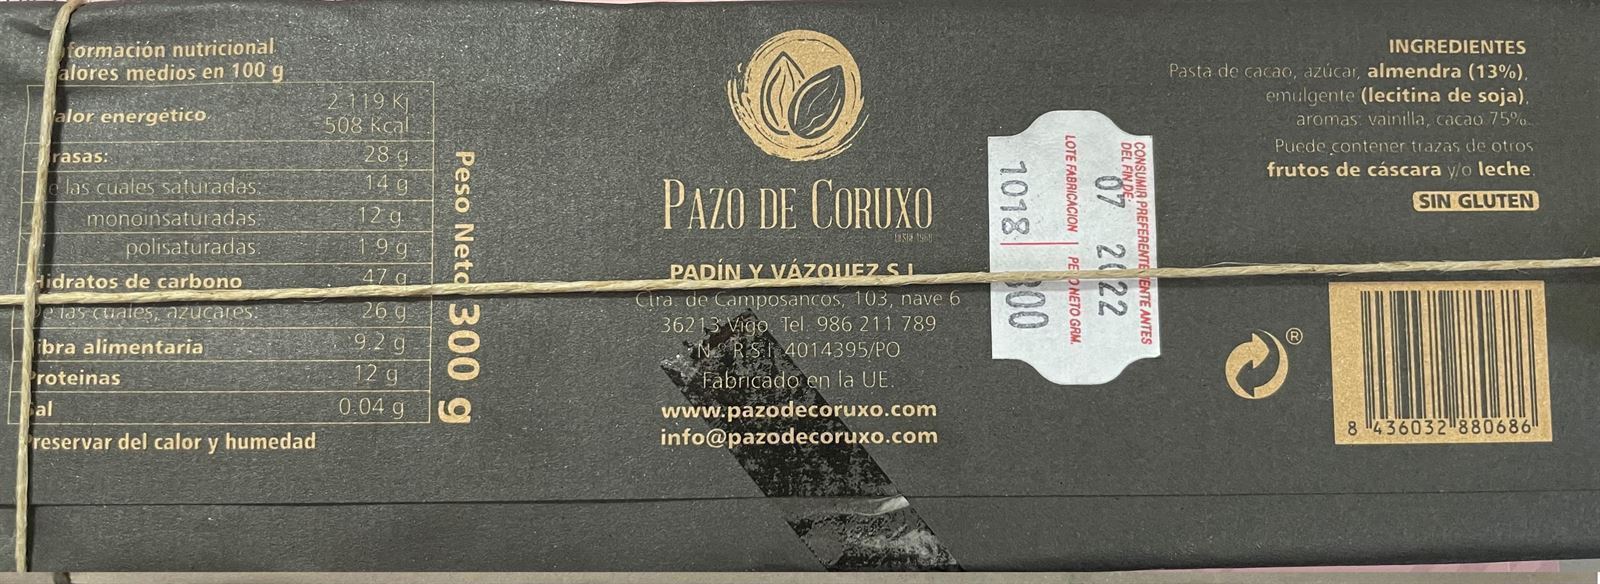 TABLETA CHOCOLATE NEGRO 75% CON ALMENDRAS PAZO DE CORUXO 300grs - Imagen 2